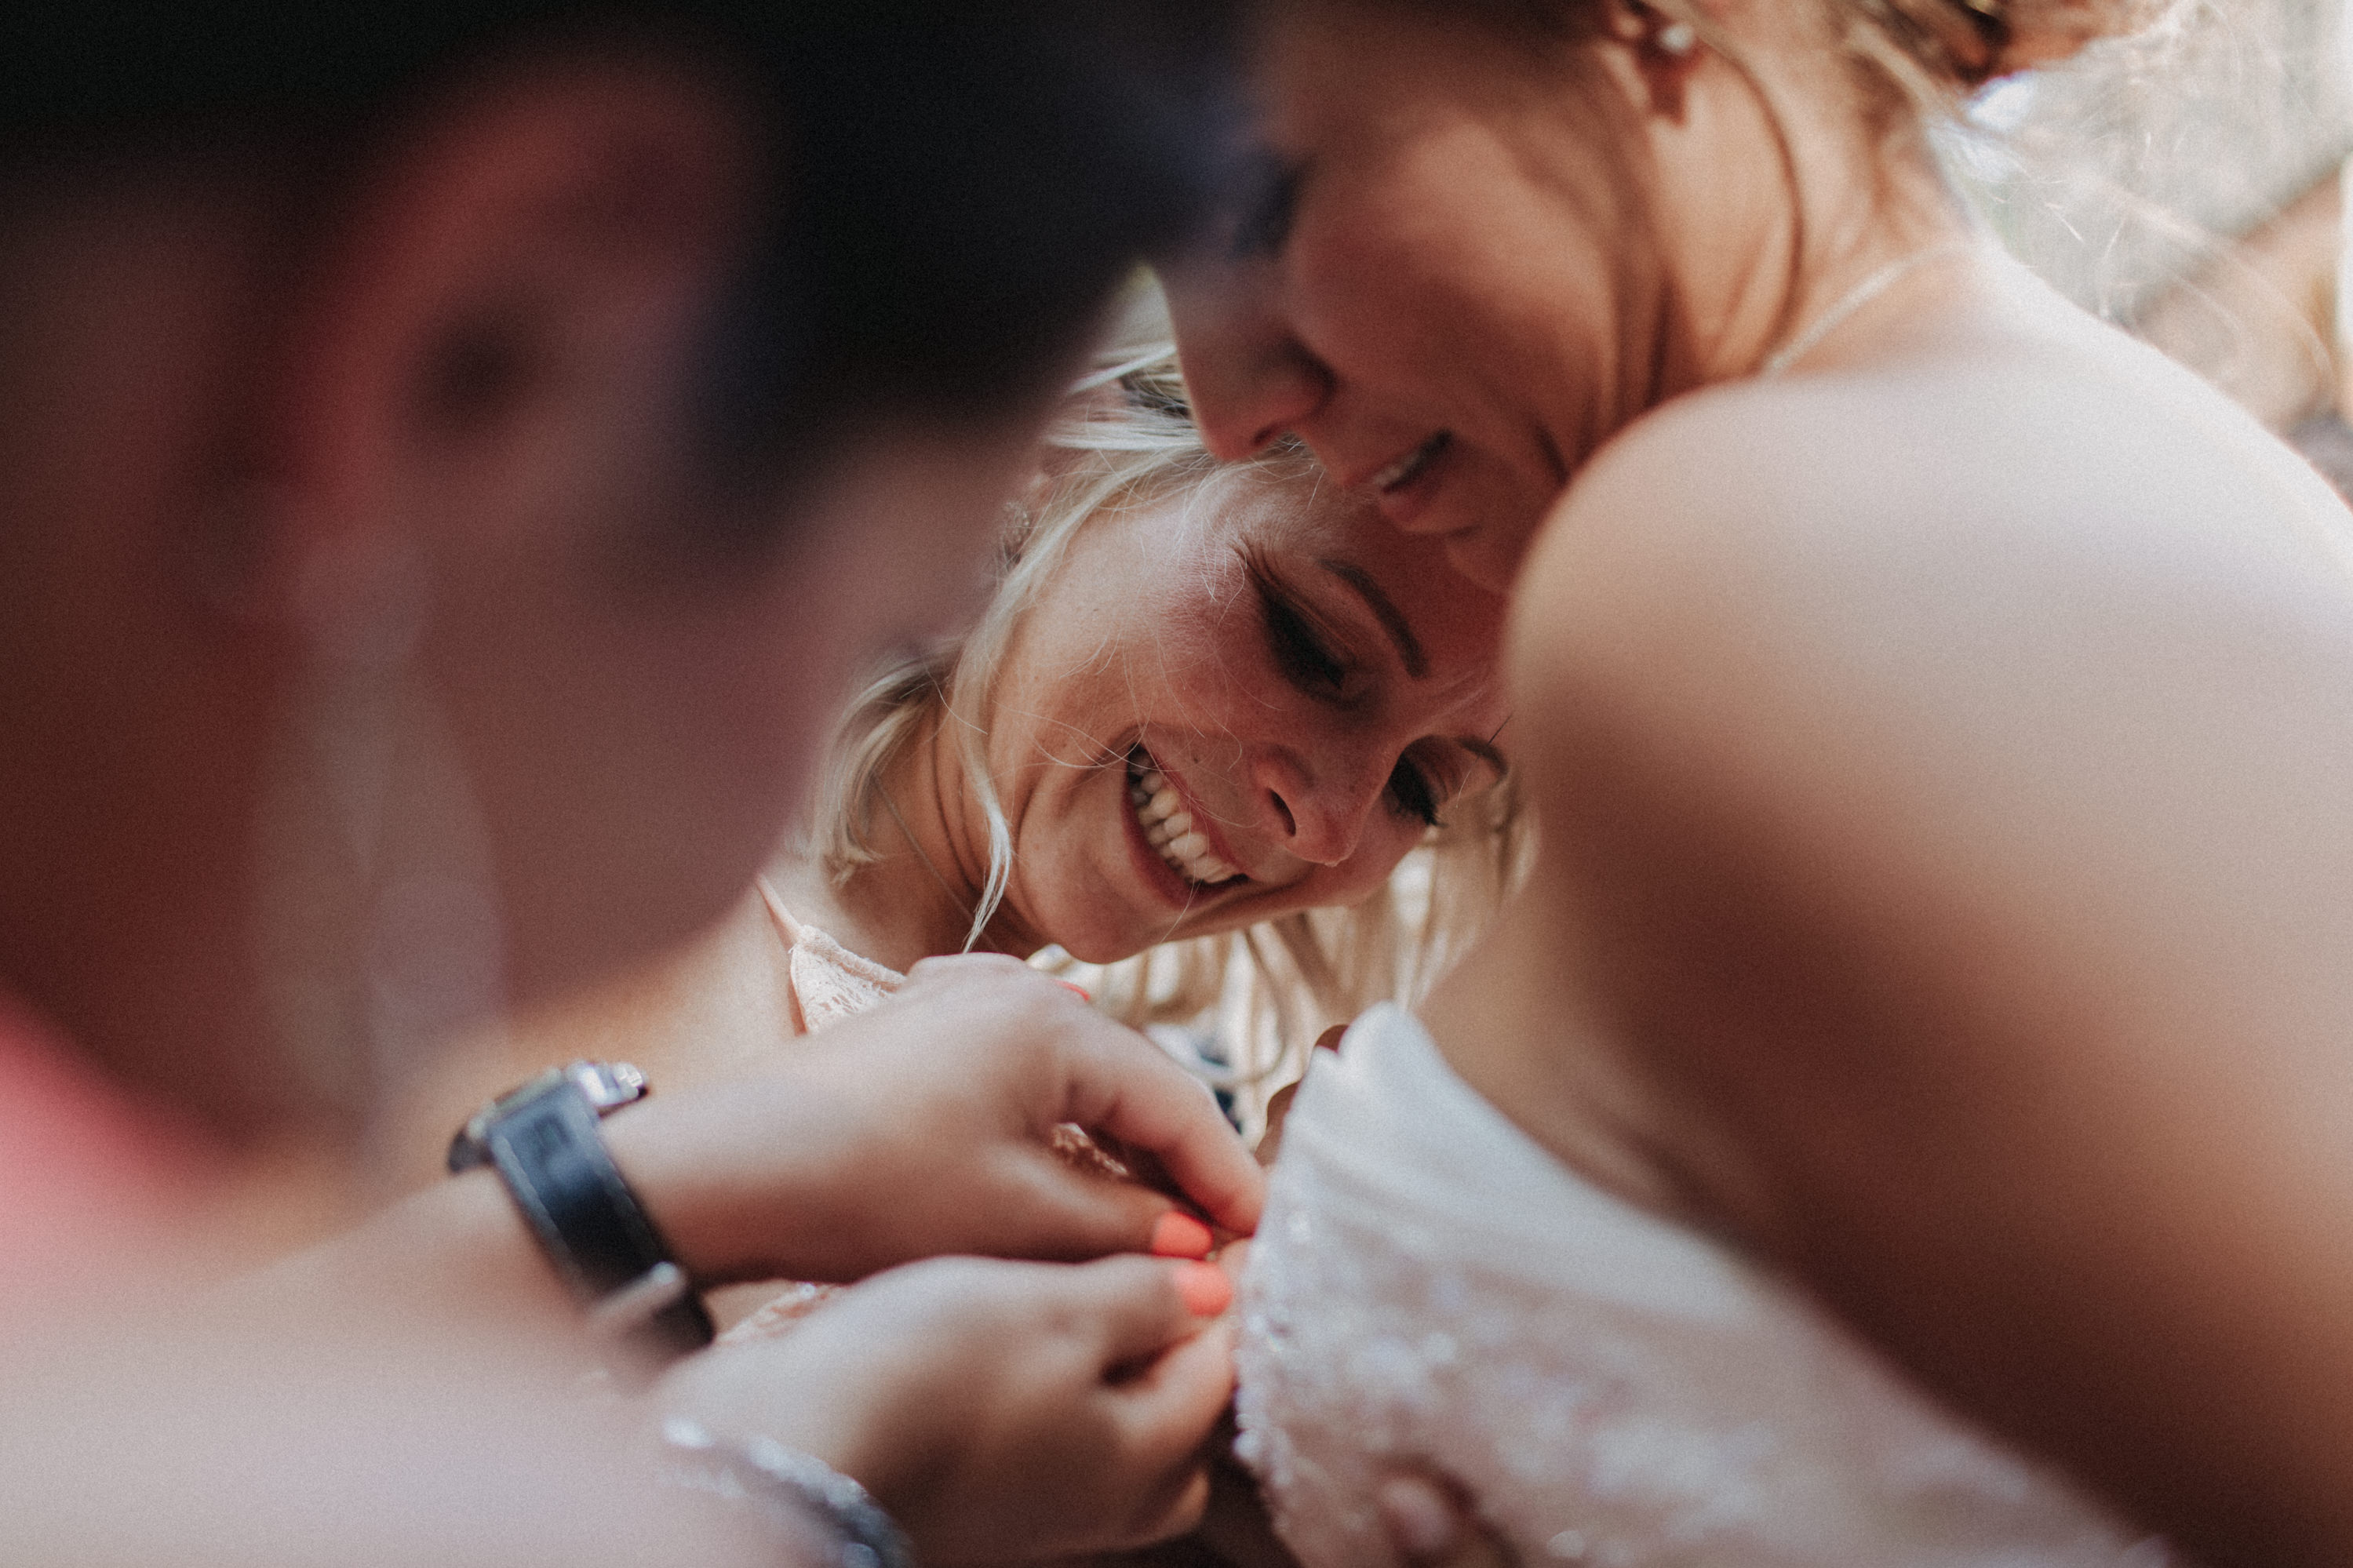 Dieses Foto ist Teil einer Hochzeitsreportage aus dem Juni 2018. Geheiratet haben zwei Frauen, die bei einer freien Trauung bei Sonnenschein getraut wurden. Fotografiert wurde diese Hochzeitsreportage von den Hochzeitsfotografen Tom und Lia aus Potsdam.